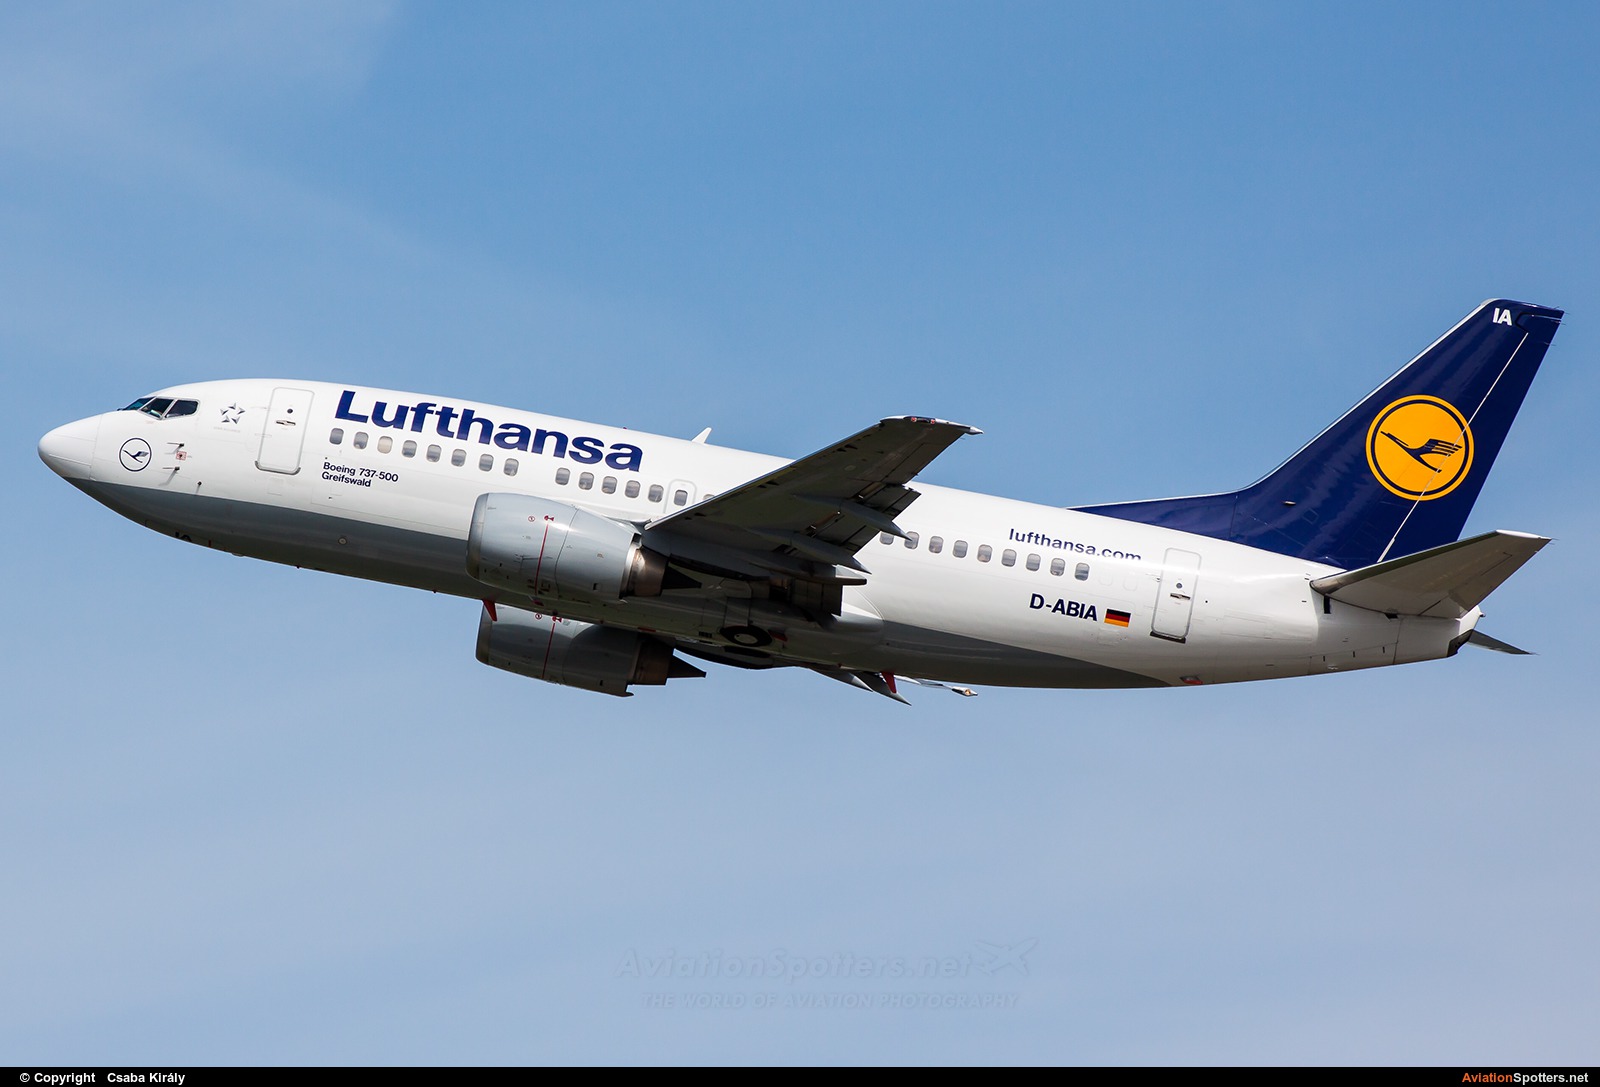 Lufthansa  -  737-500  (D-ABIA) By Csaba Király (Csaba Kiraly)